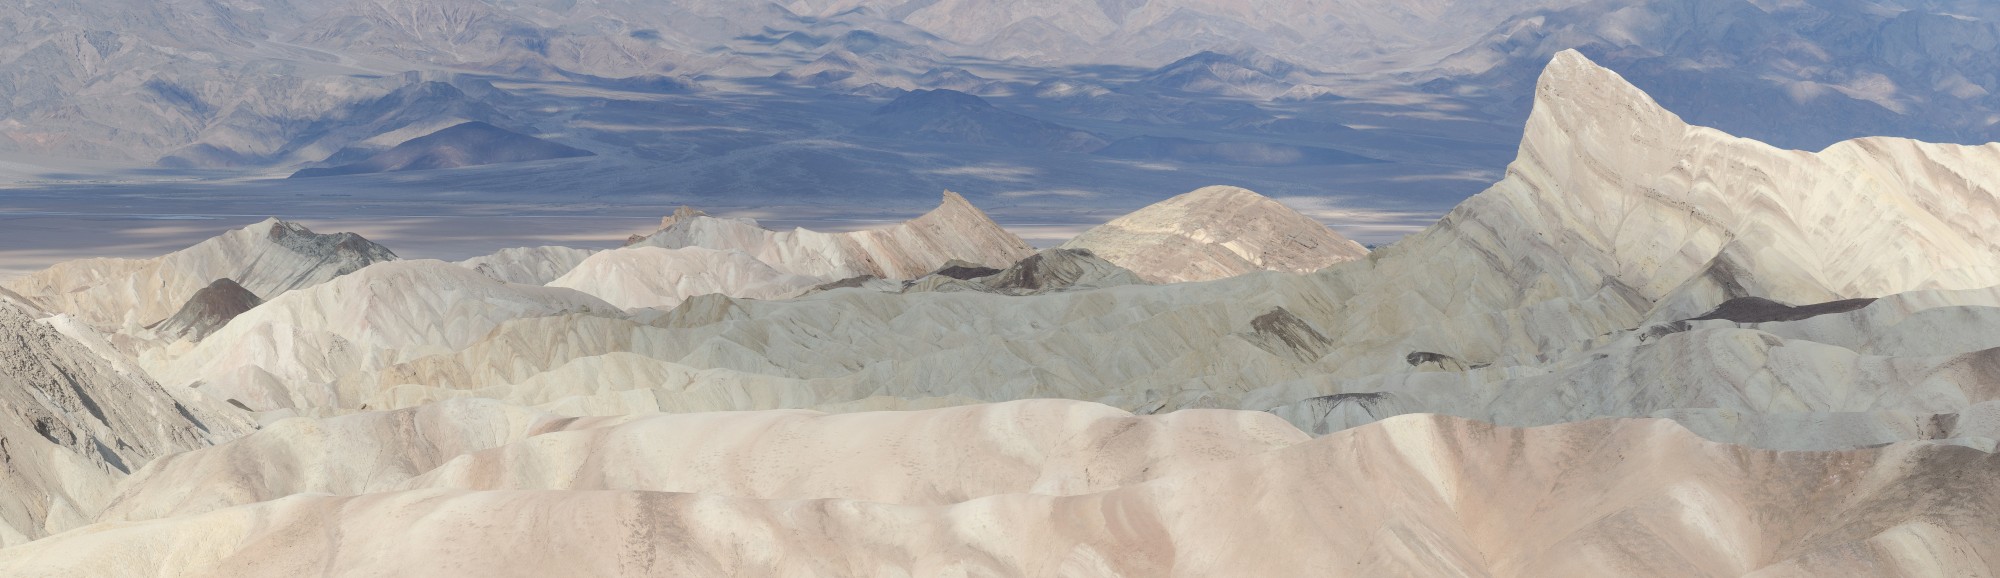 Death Valley view from Zabriskie Point 2013 01